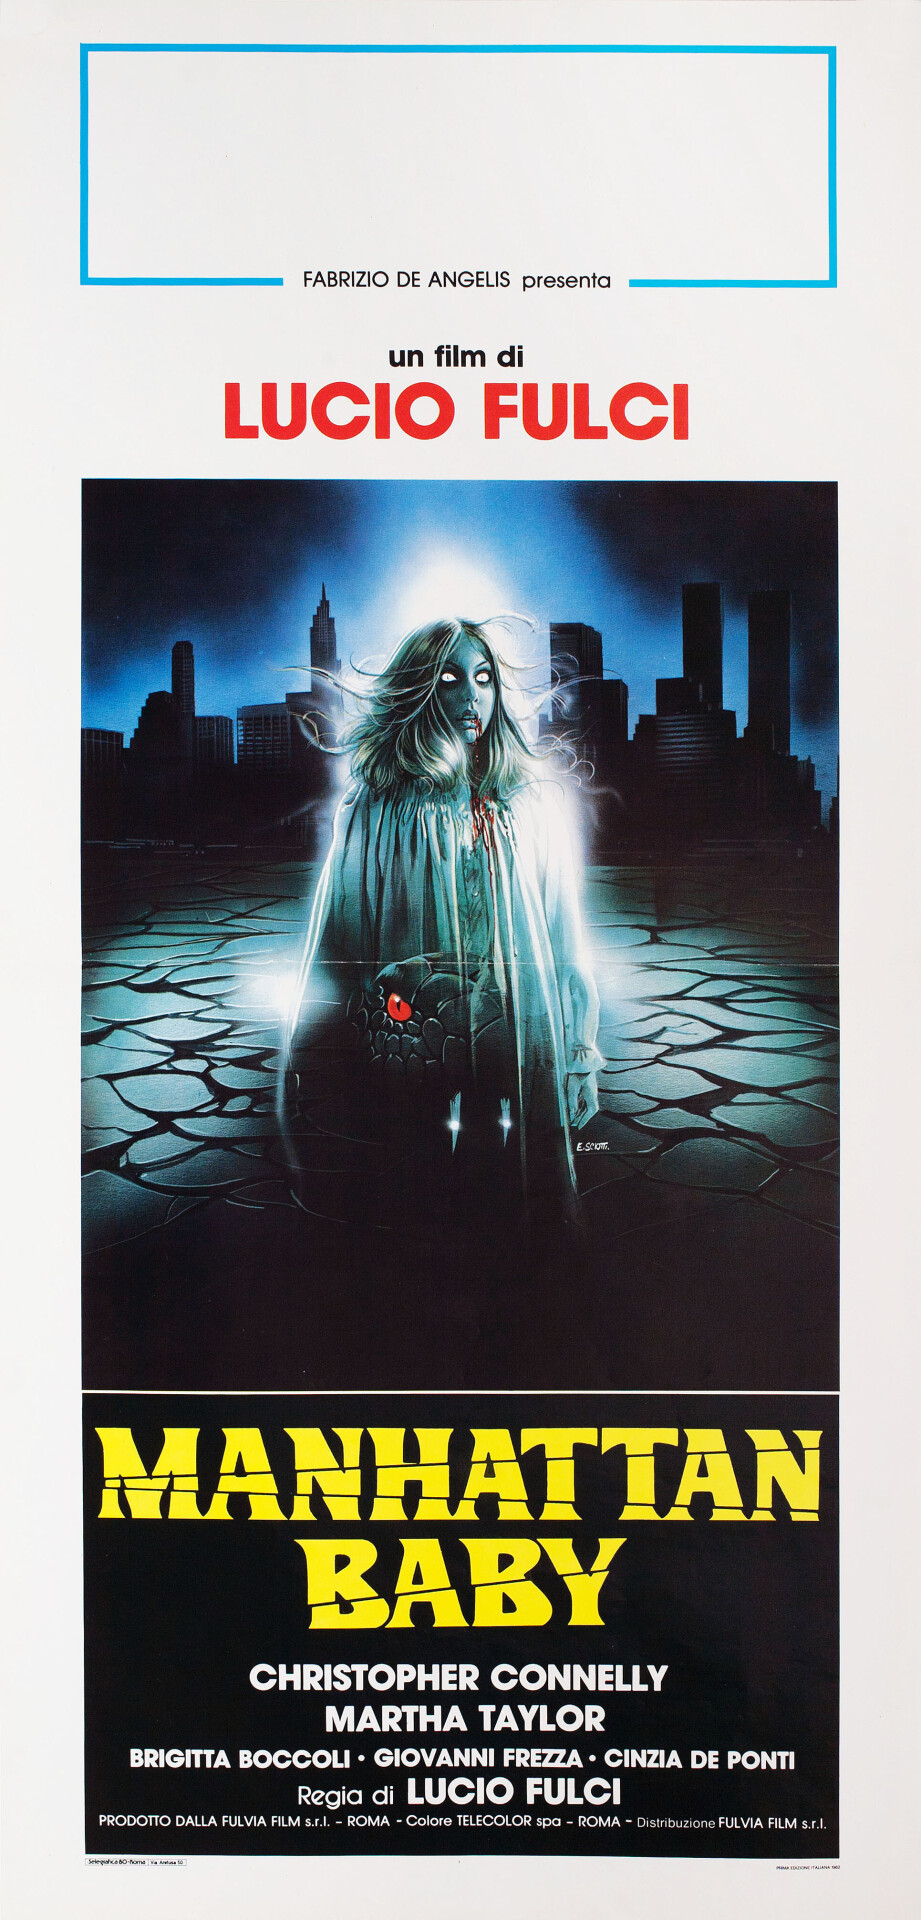 Проклятое дитя (Manhattan Baby, 1982), режиссёр Лучио Фульчи, итальянский постер к фильму, автор Энцо Скиотти (ужасы, 1982 год)